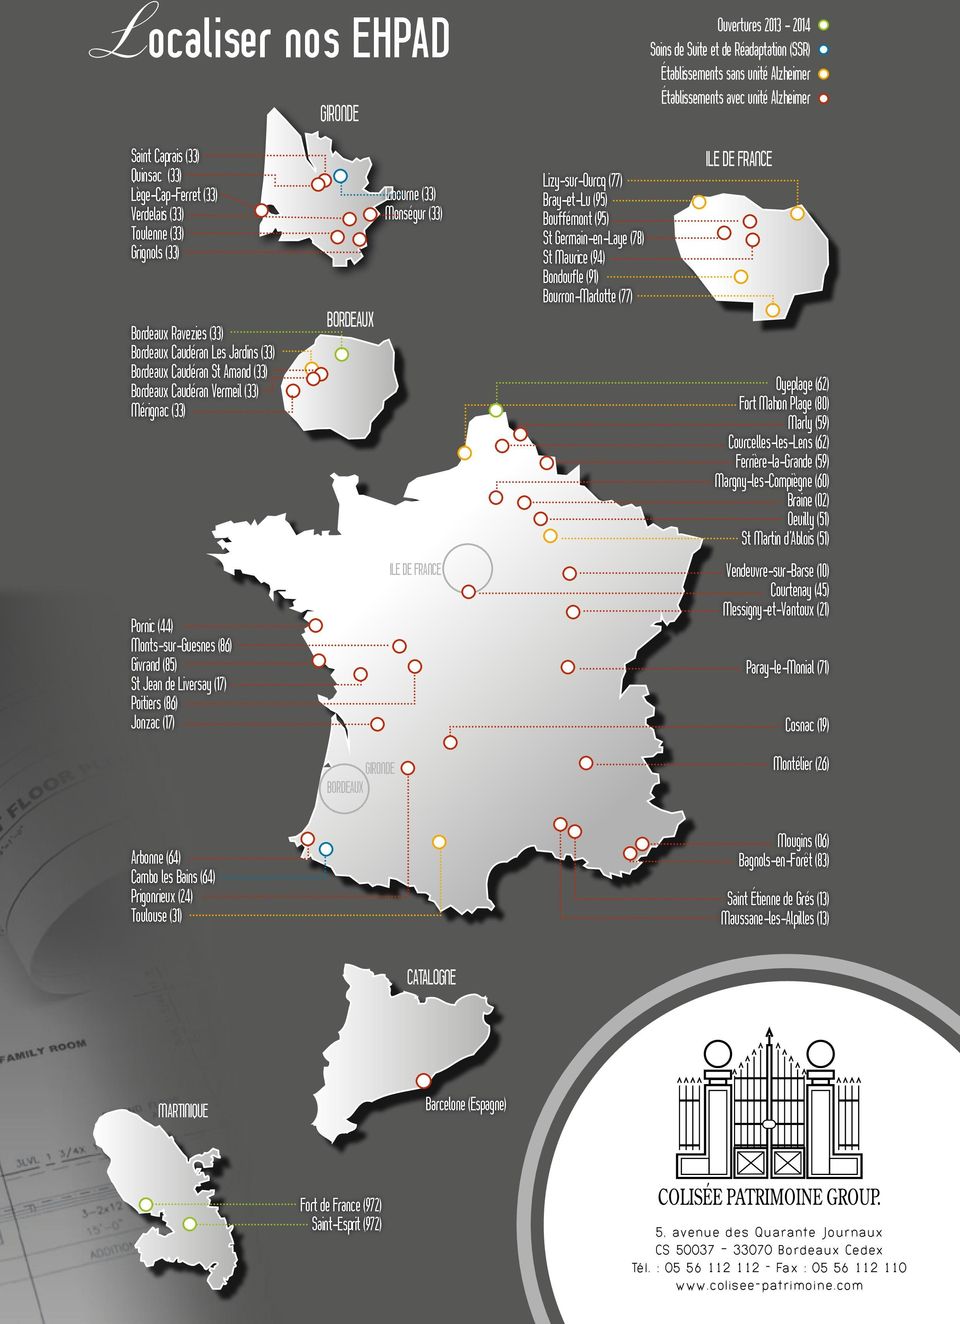 bordeaux Libourne (33) Monségur (33) Lizy-sur-Ourcq (77) Bray-et-Lu (95) Bouffémont (95) St Germain-en-Laye (78) St Maurice (94) Bondoufle (91) Bourron-Marlotte (77) ile de France Oyeplage (62) Fort